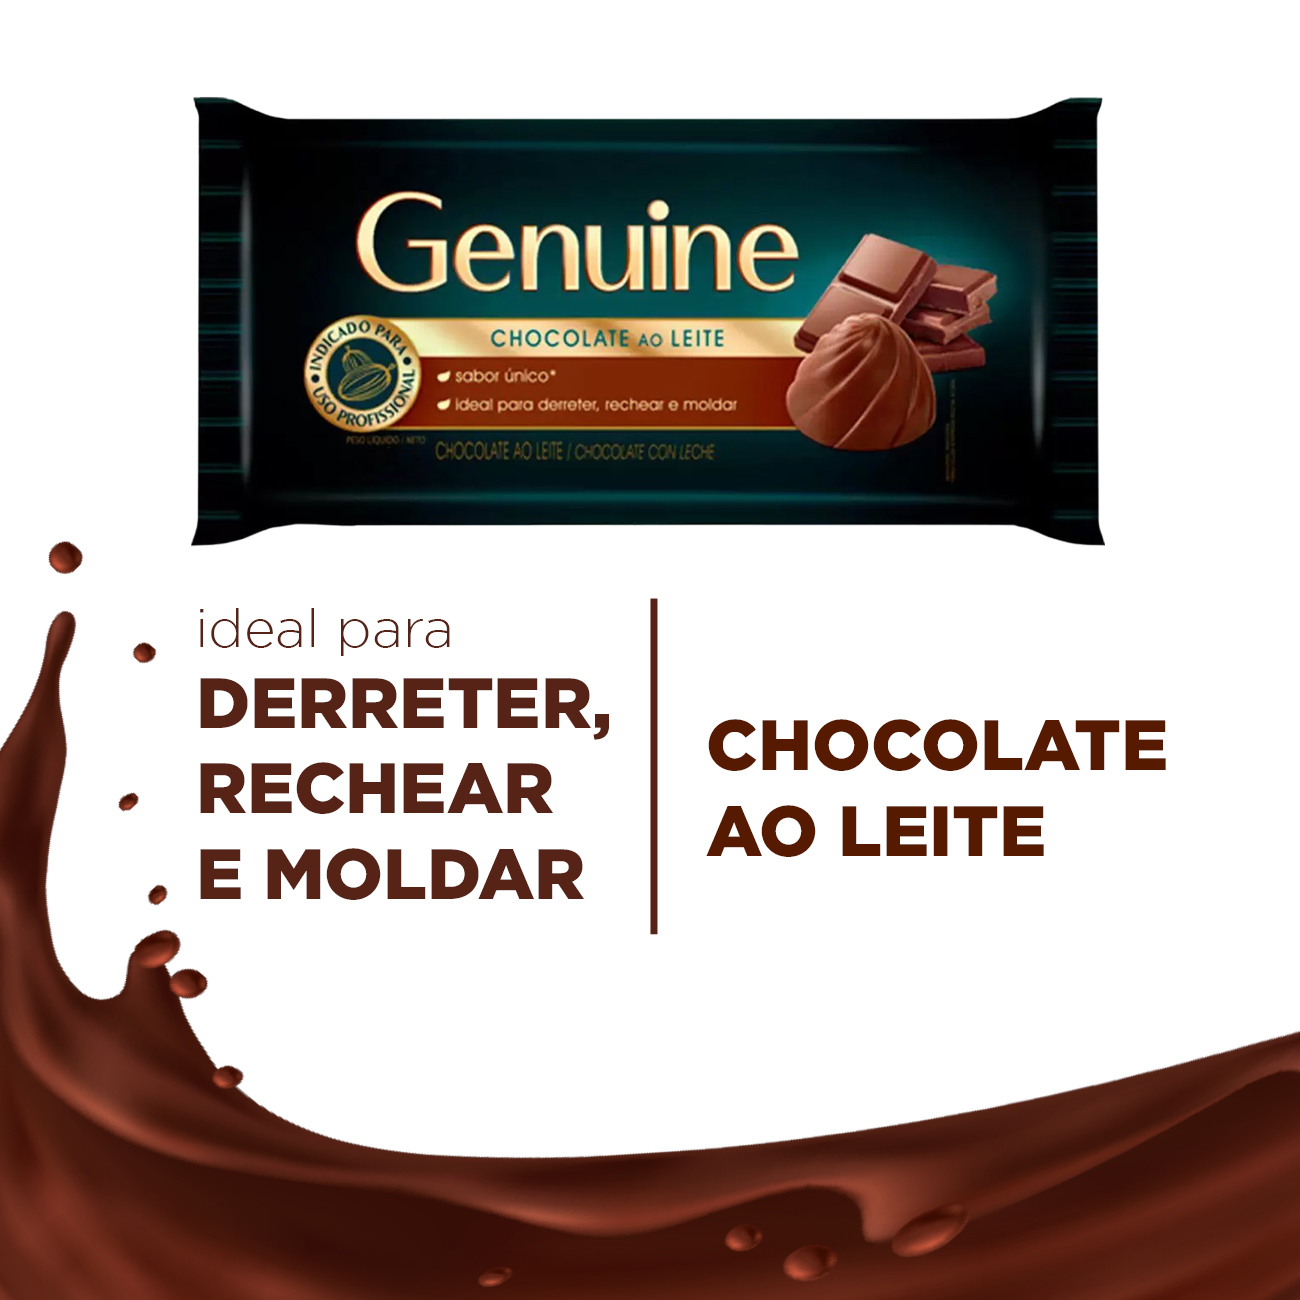 Chocolate em Barra Cargill Genuine ao Leite 2,1kg